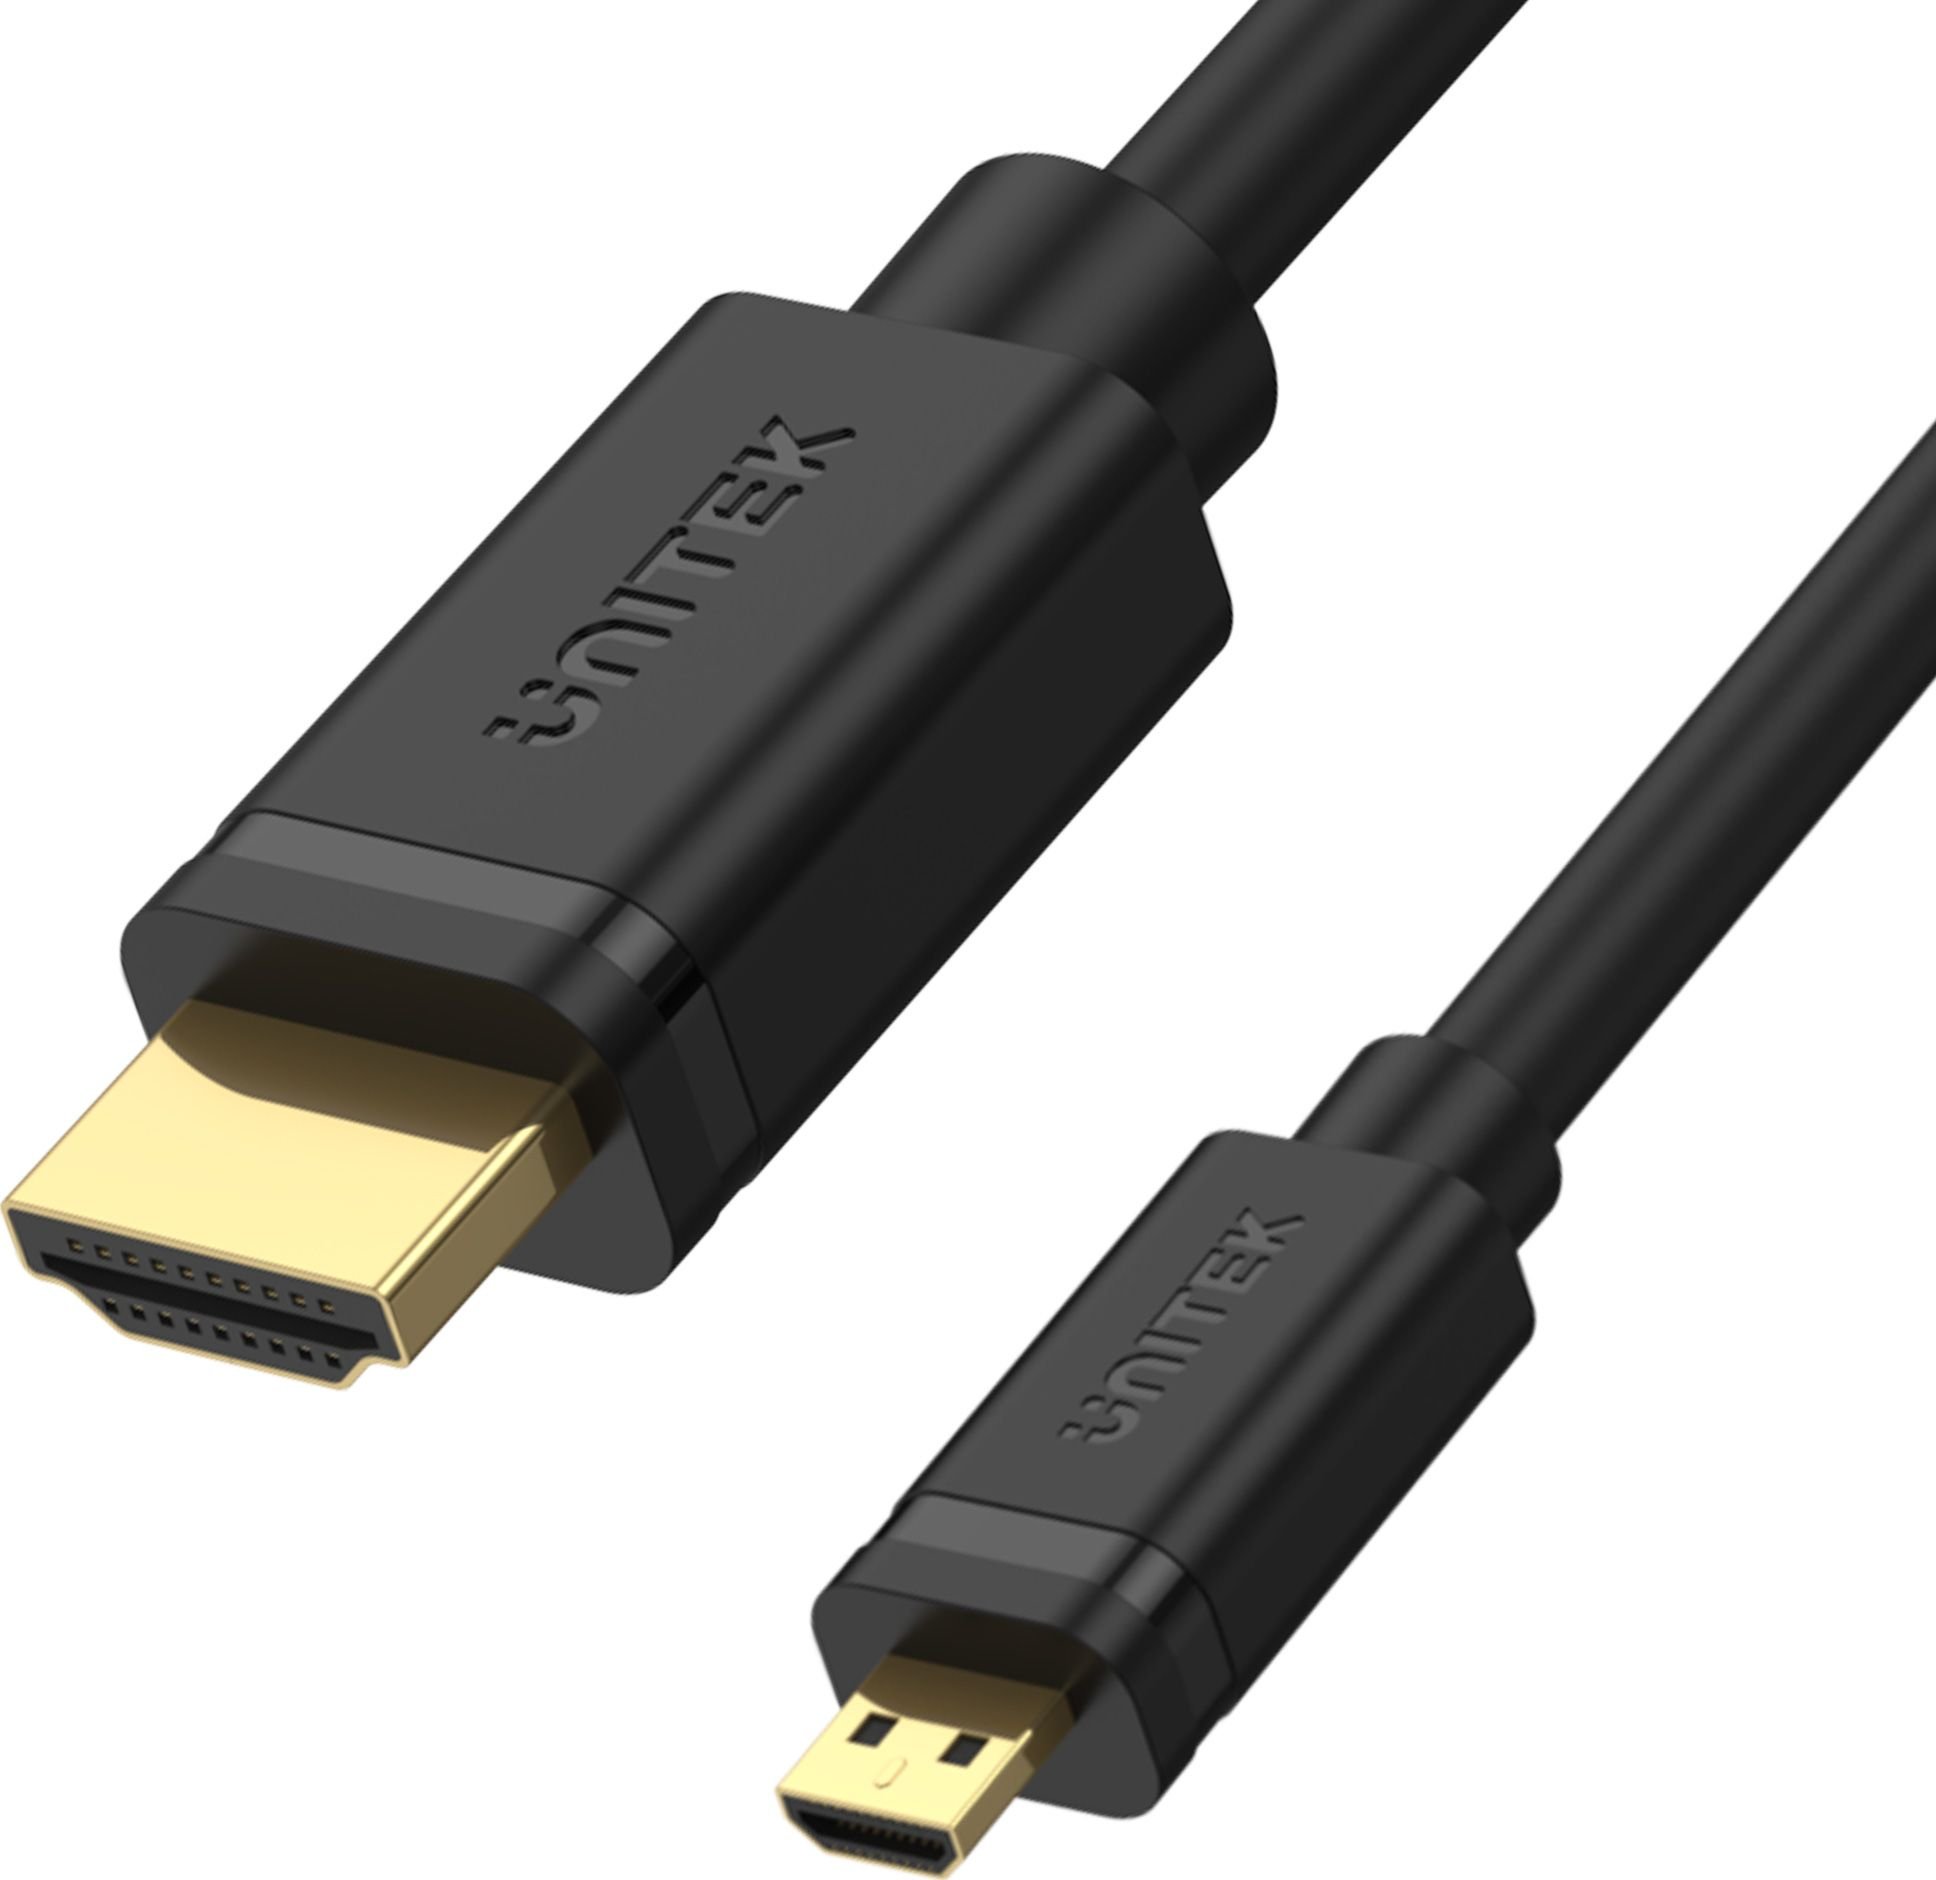 Cablu convertor Micro HDMI la HDMI 2.0, 4K, ARC HDR, Negru, 2 m